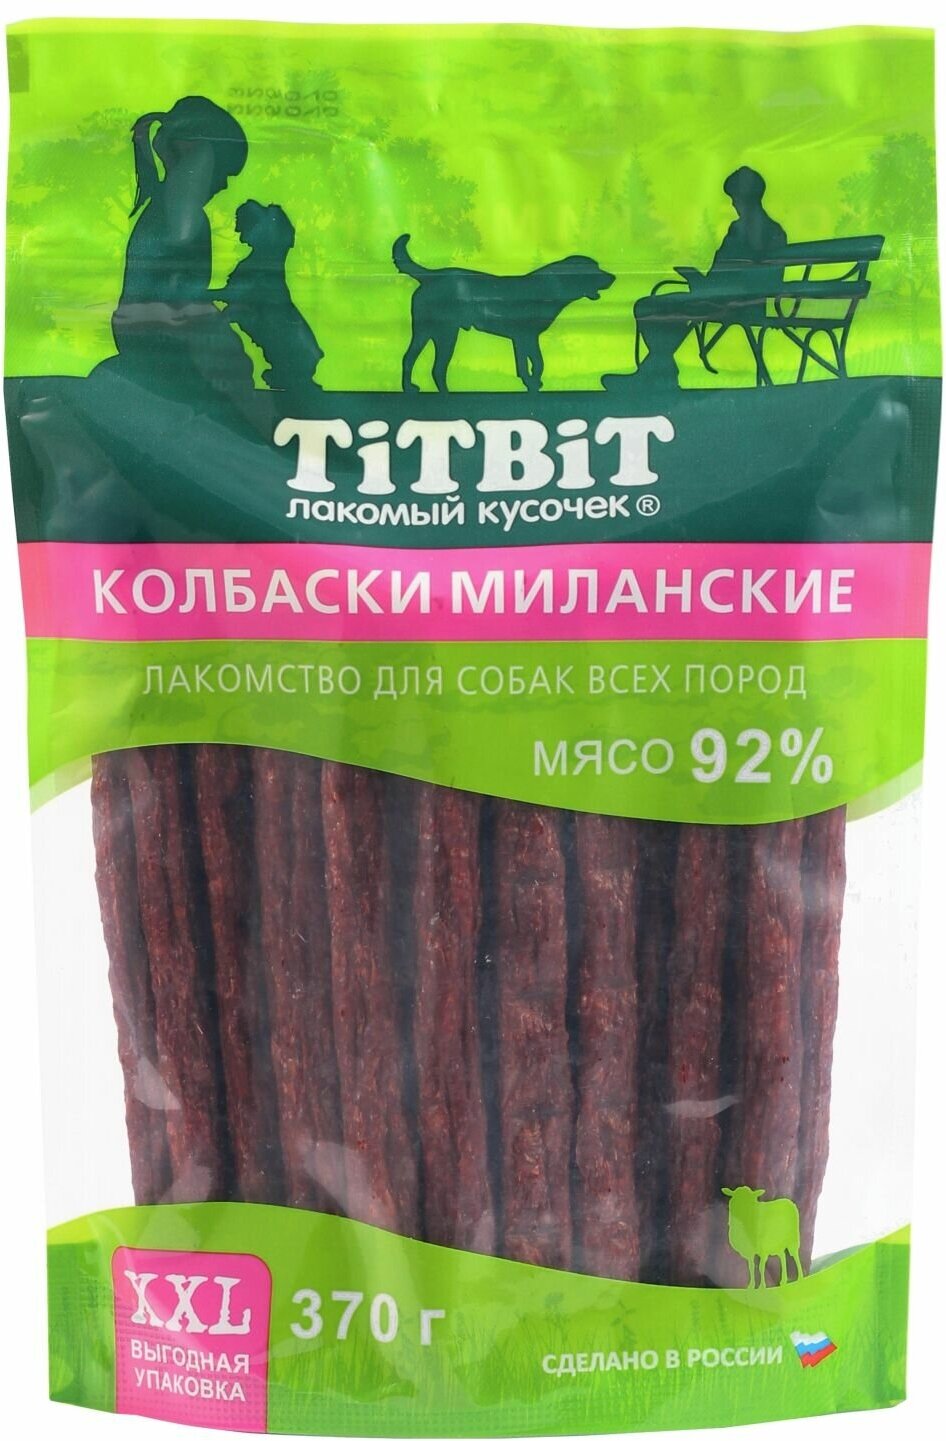 Лакомство TitBit для собак колбаски миланские 370г xxl 024324 выгодная упаковка